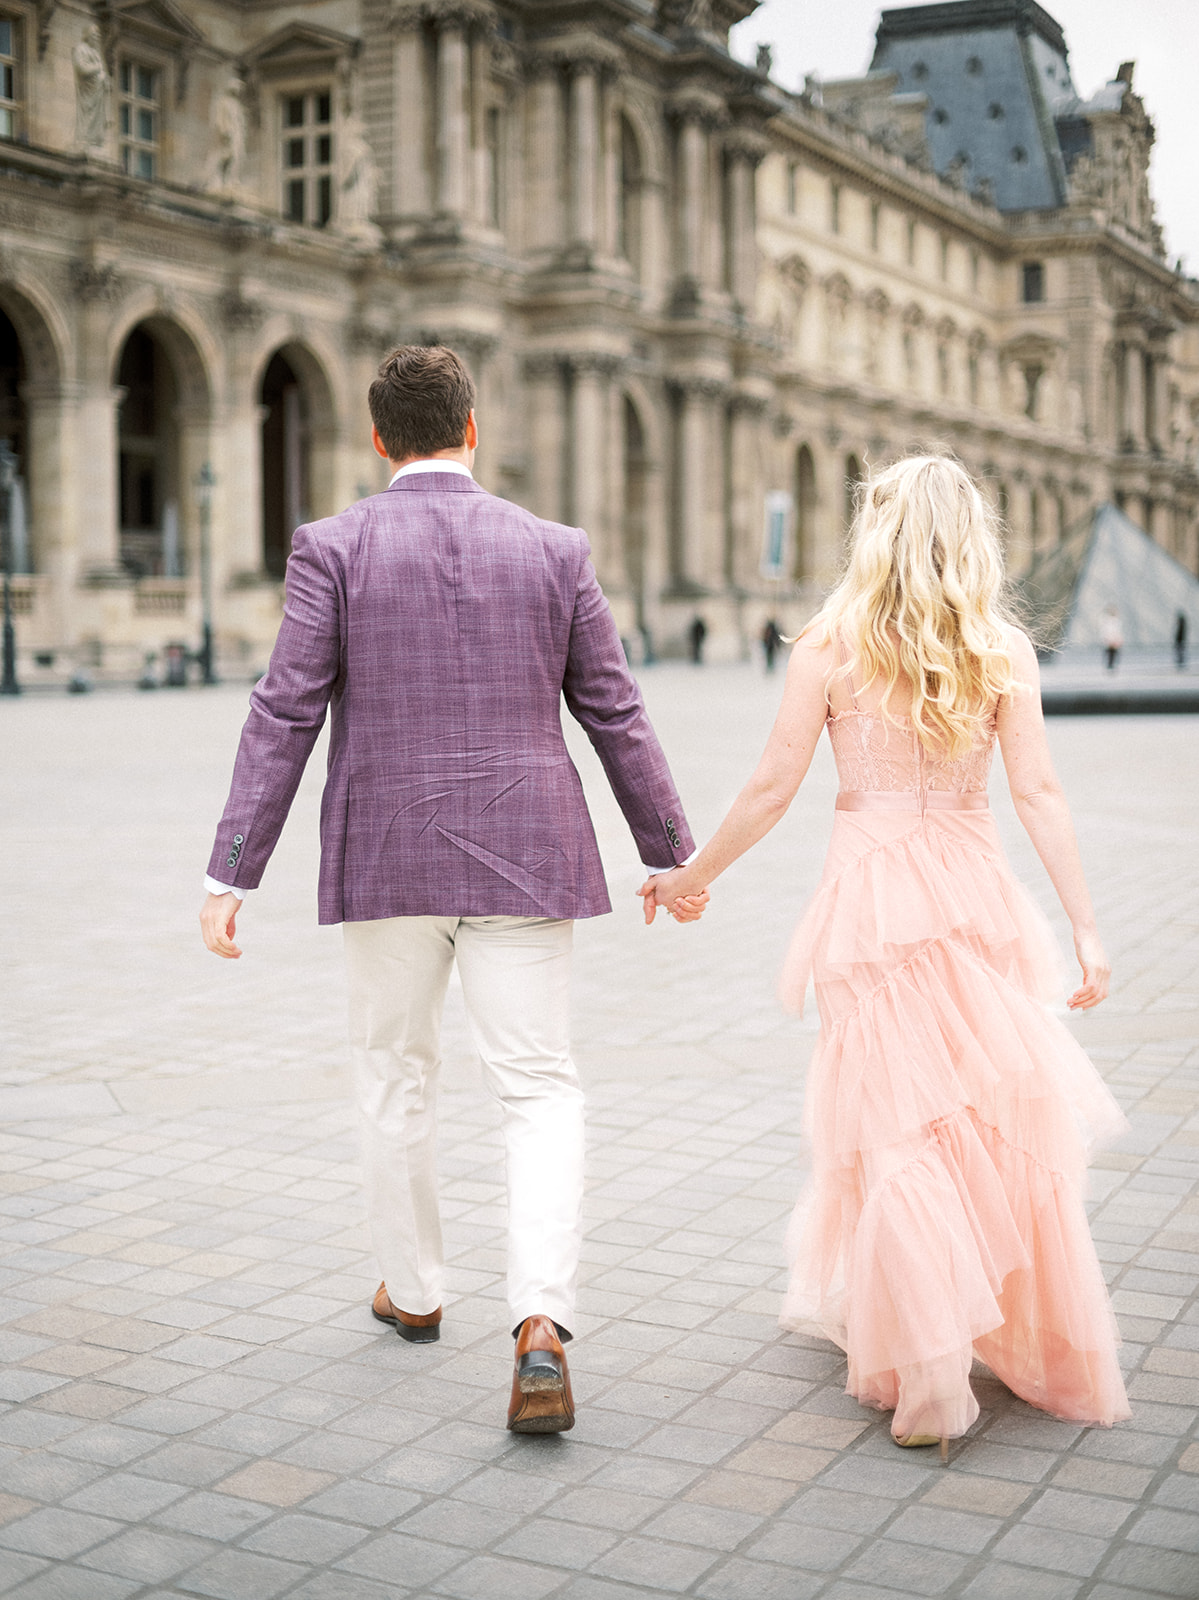 Couple walking near Louvre.